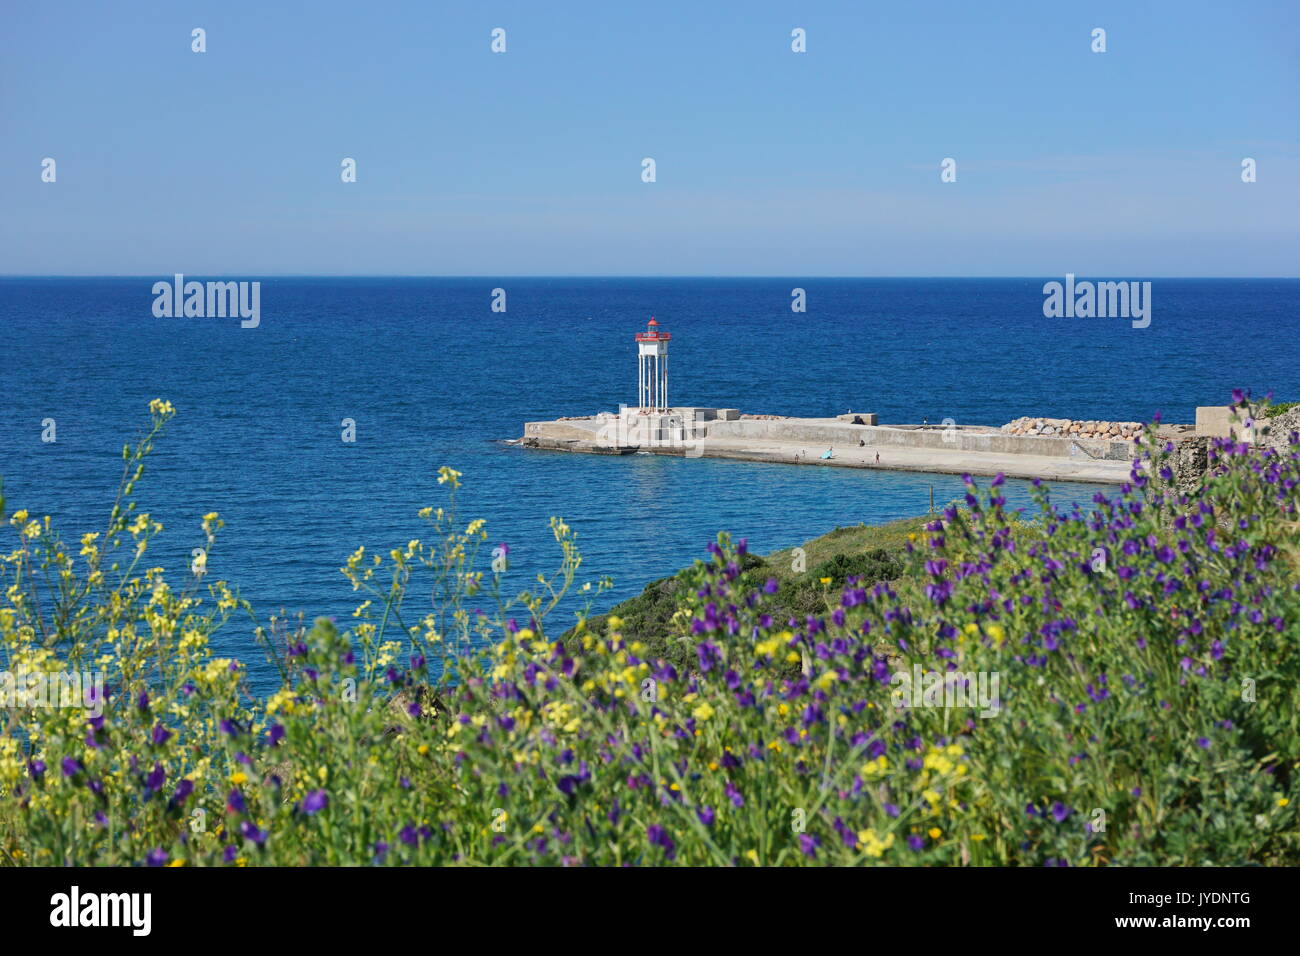 Jetée avec un phare et fleurs en premier plan, Collioure, côte Vermeille, Méditerranée, Roussillon, Pyrénées-Orientales, France Banque D'Images